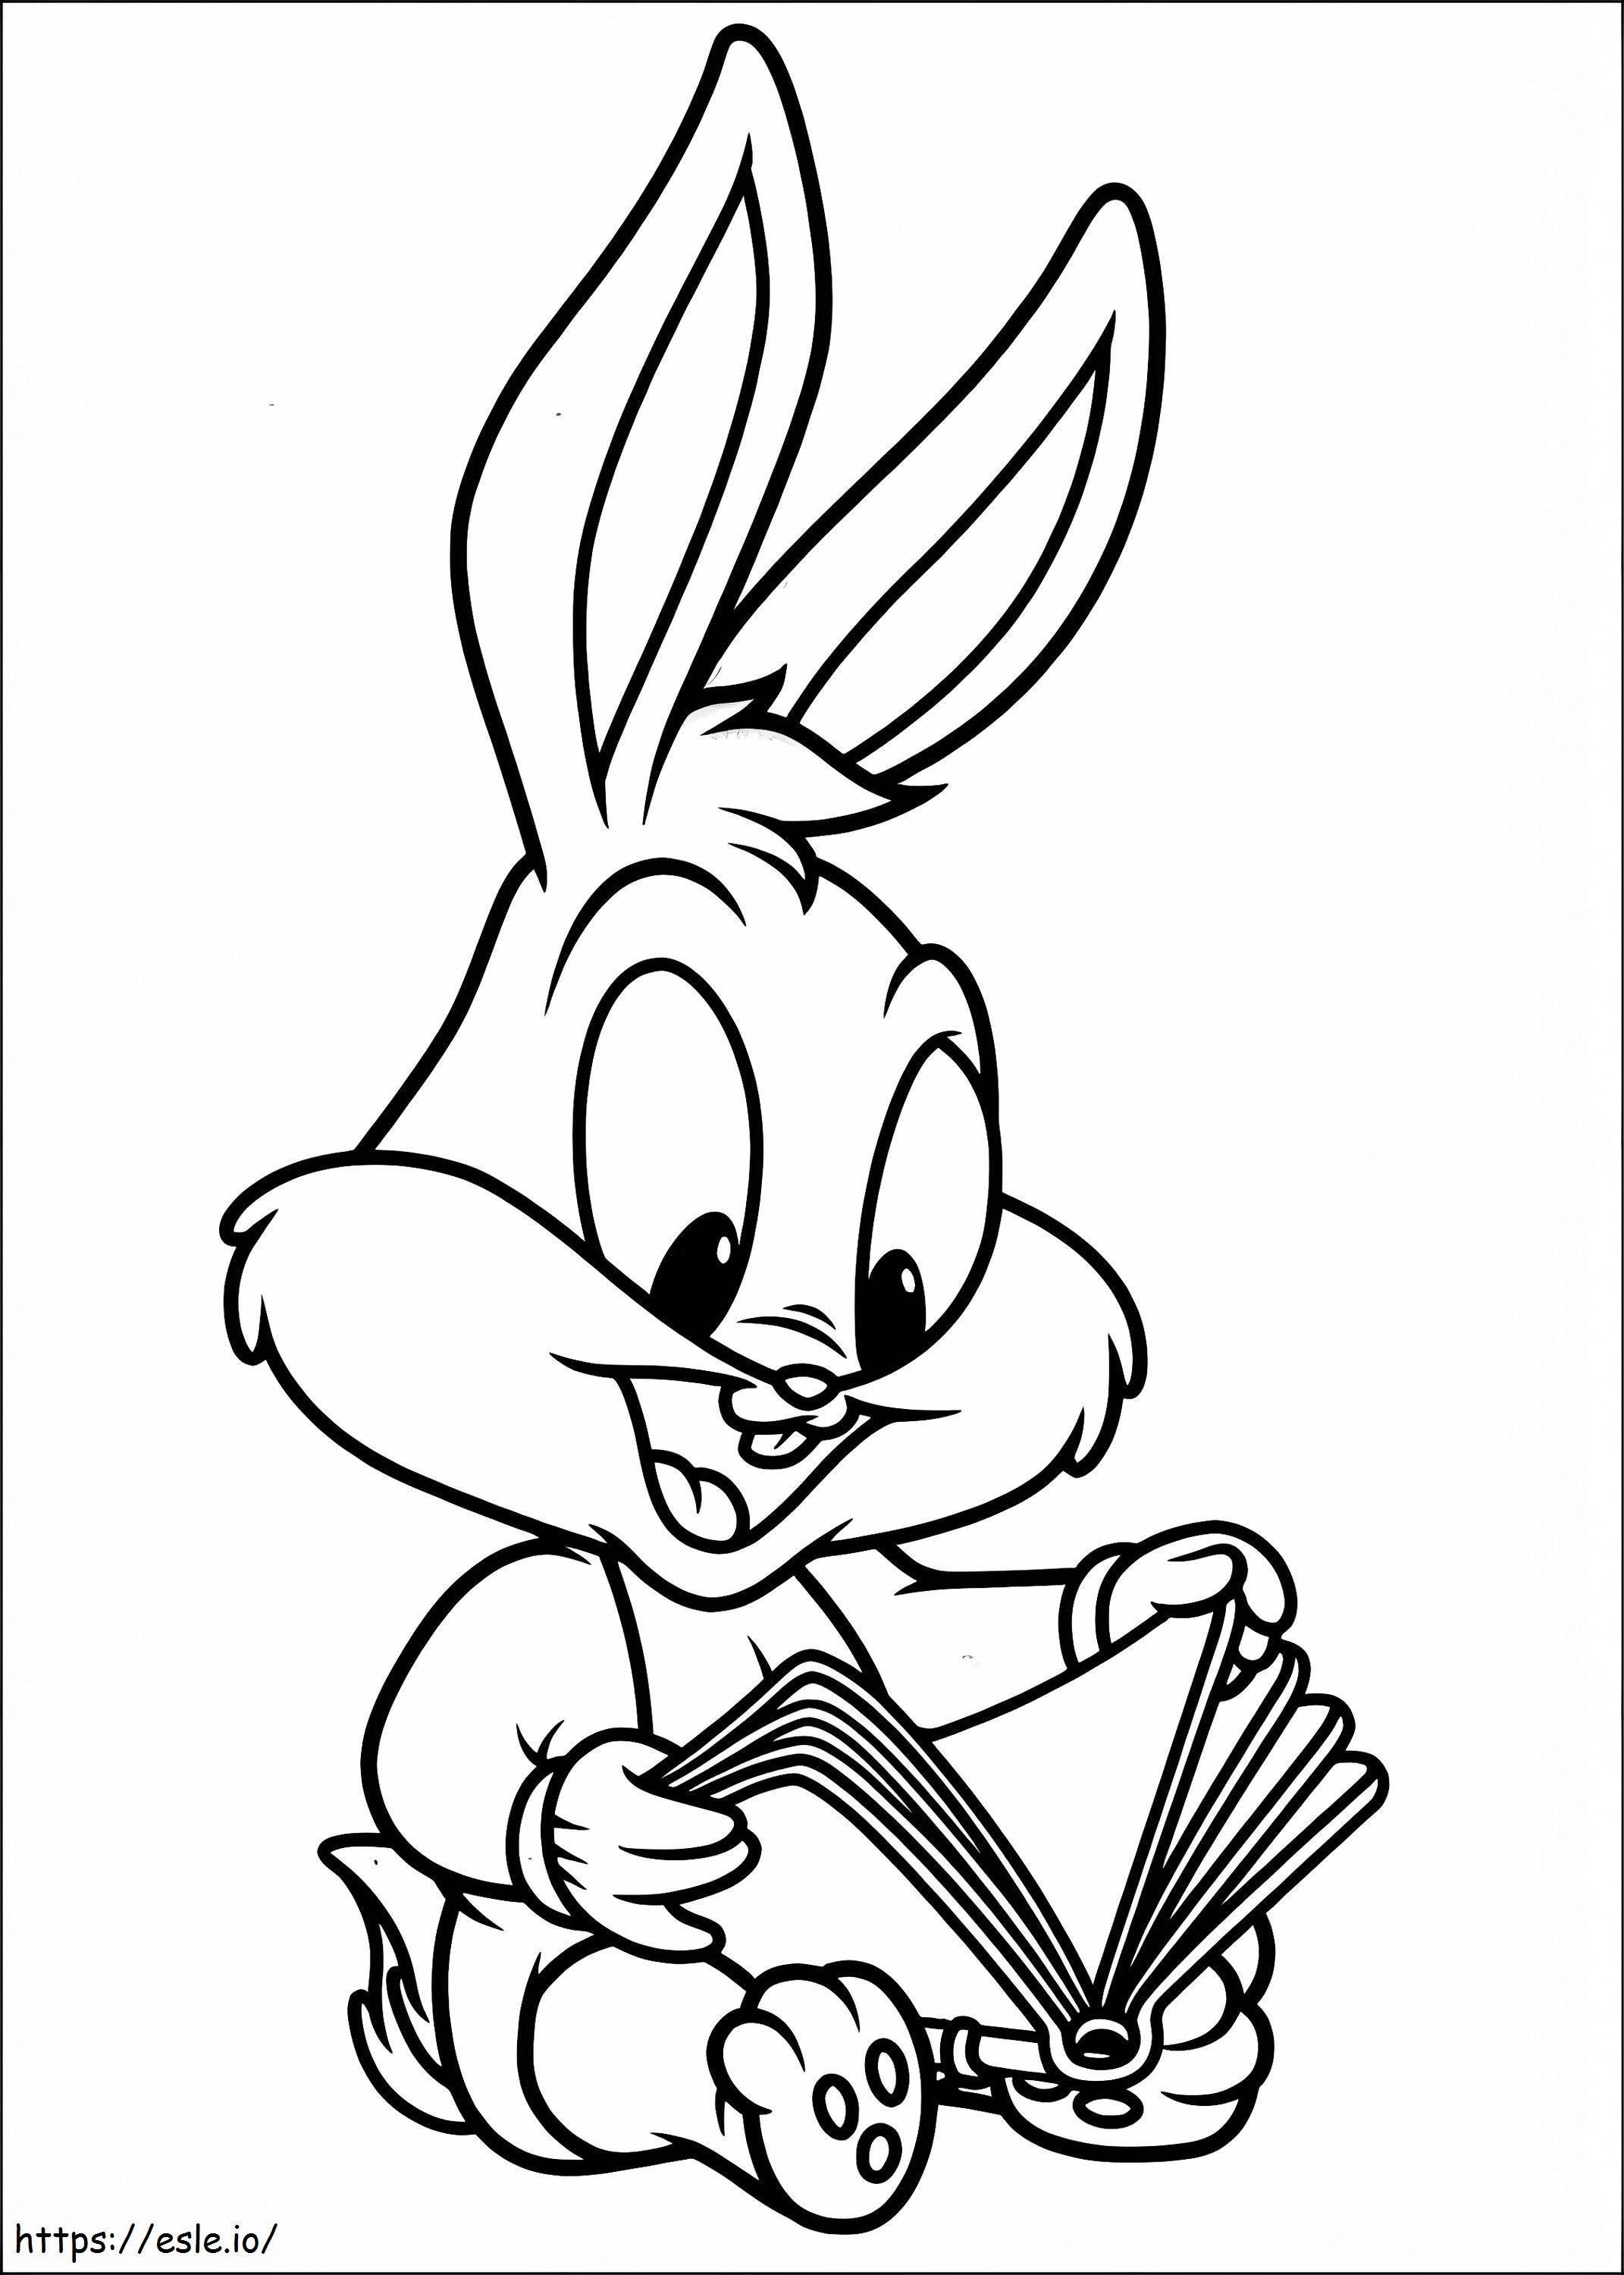 Membaca Bayi Bugs Bunny Gambar Mewarnai